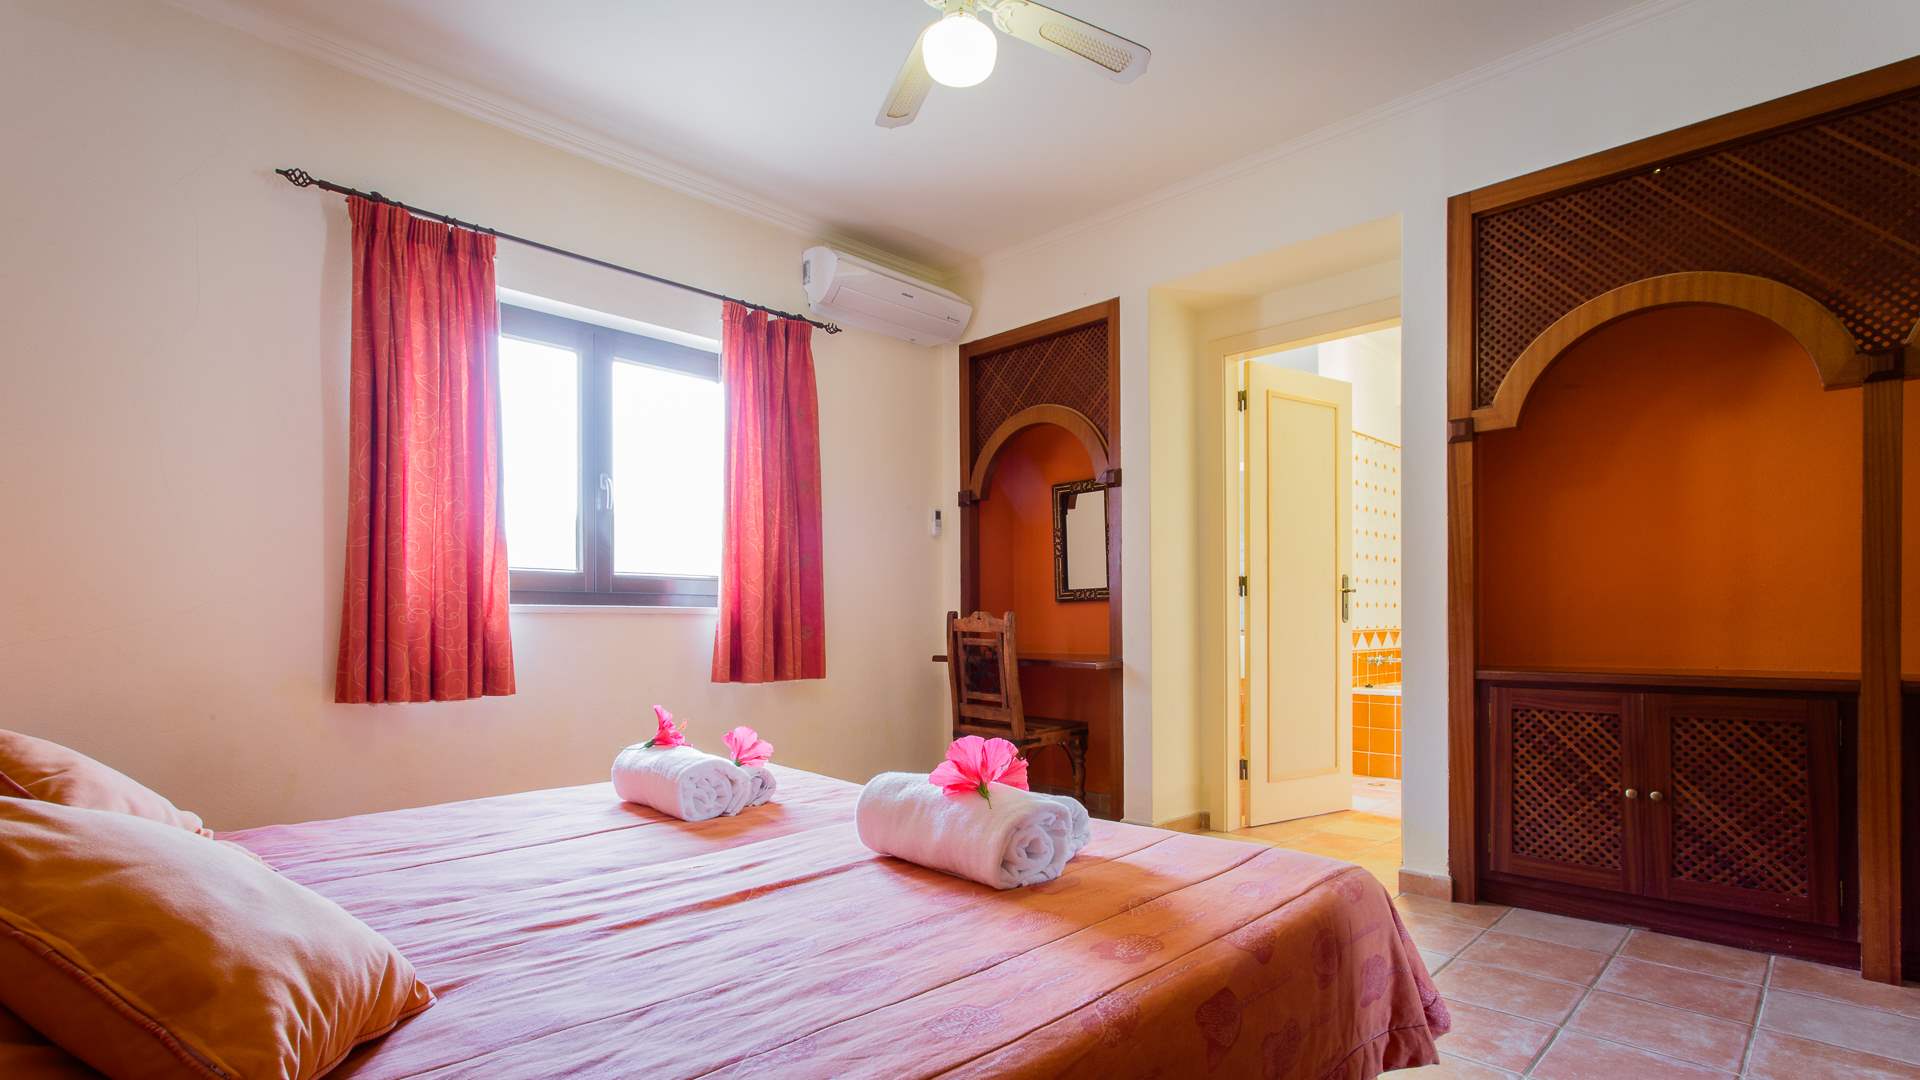 Casa Mouraria, 7 Bedrooms Rate, 7 bedroom villa in Carvoeiro Area, Algarve Photo #13